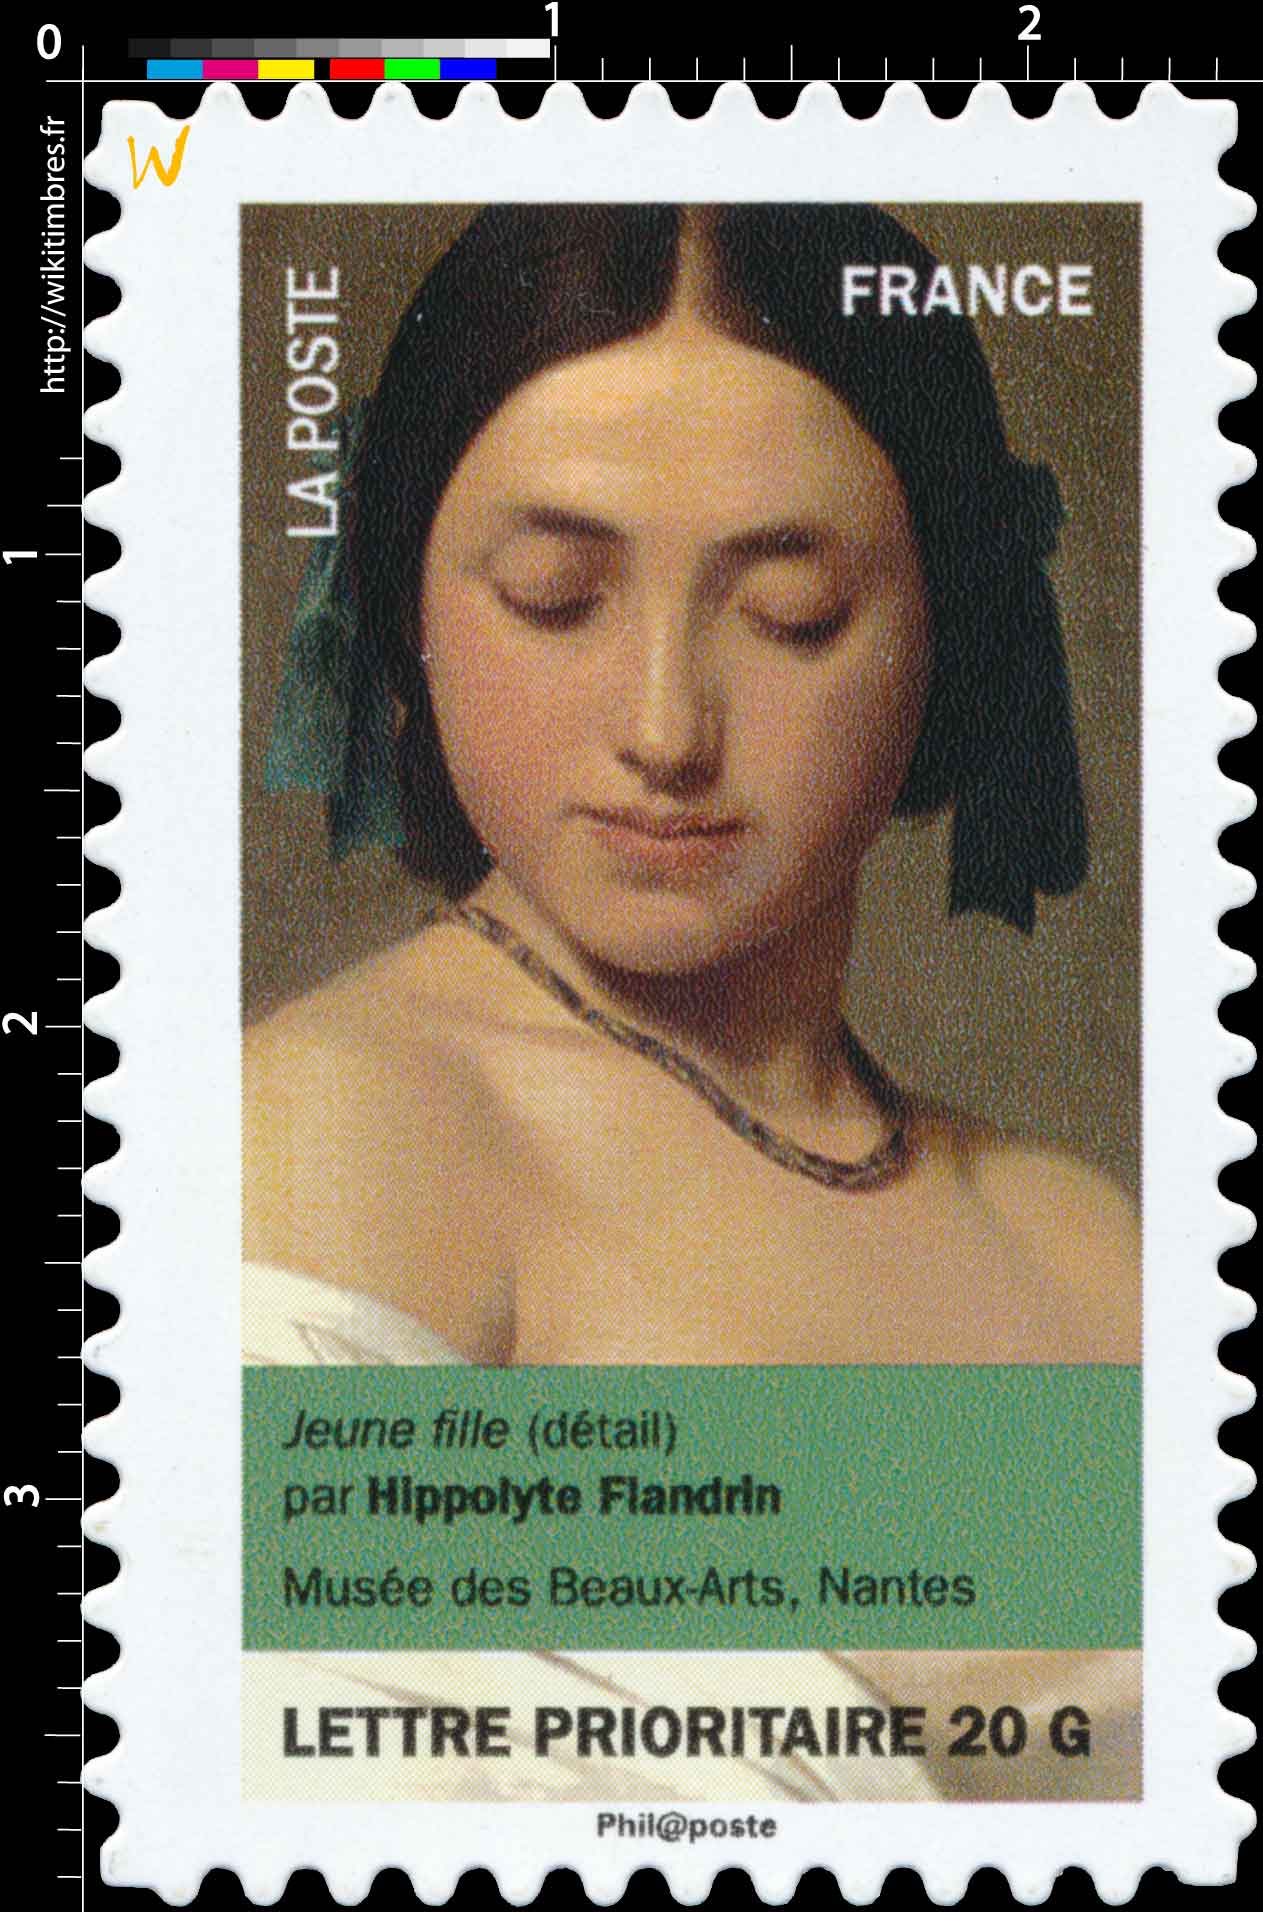 jeune fille (détail) par Hippolyte Flandrin, musée des Beaux-arts, Nantes